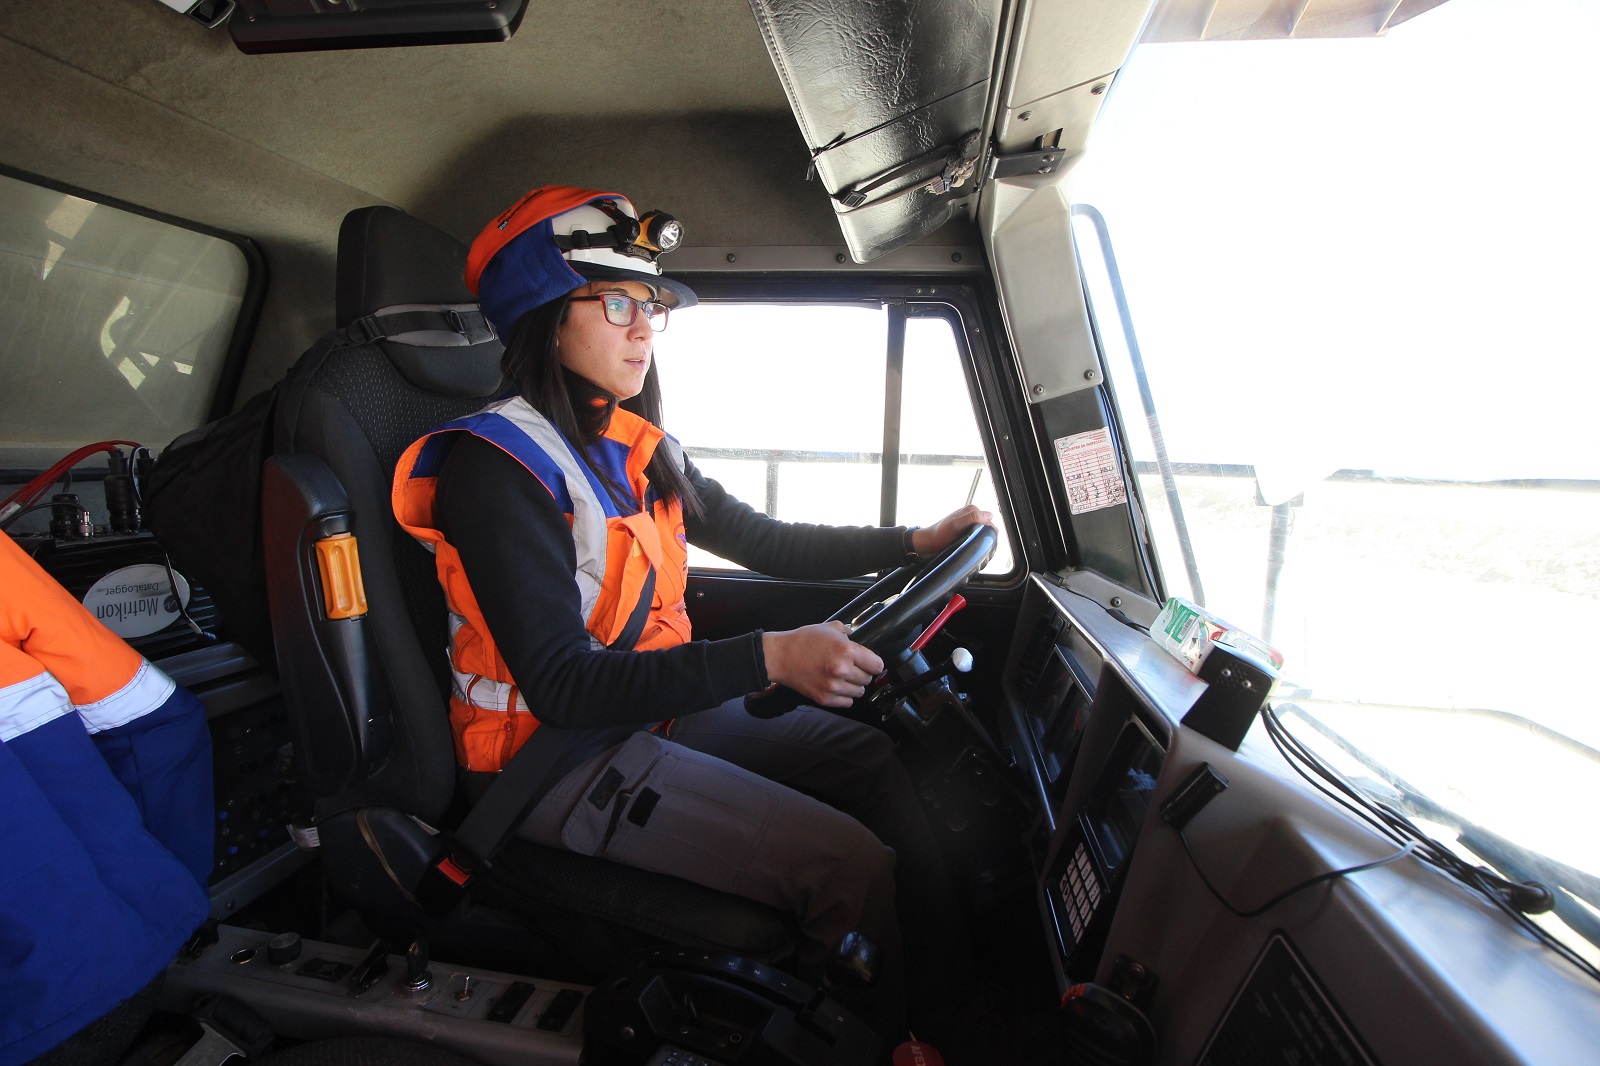 Mujeres de comunidades de Alto El Loa concluyen curso para operar camiones de extracción gracias a apoyo de Minera El Abra